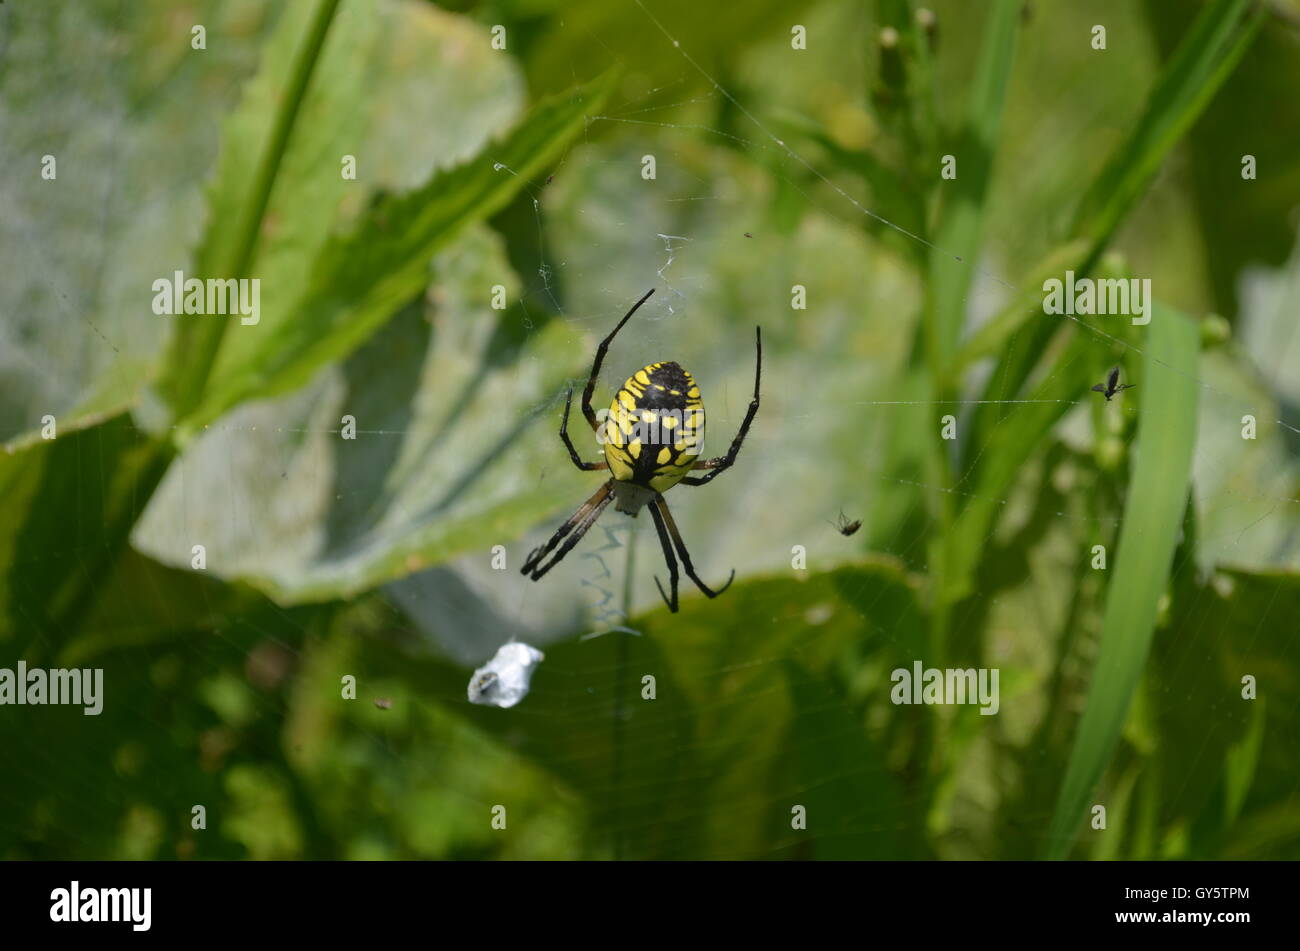 Zipper Spider web in pumpkin patch Stock Photo